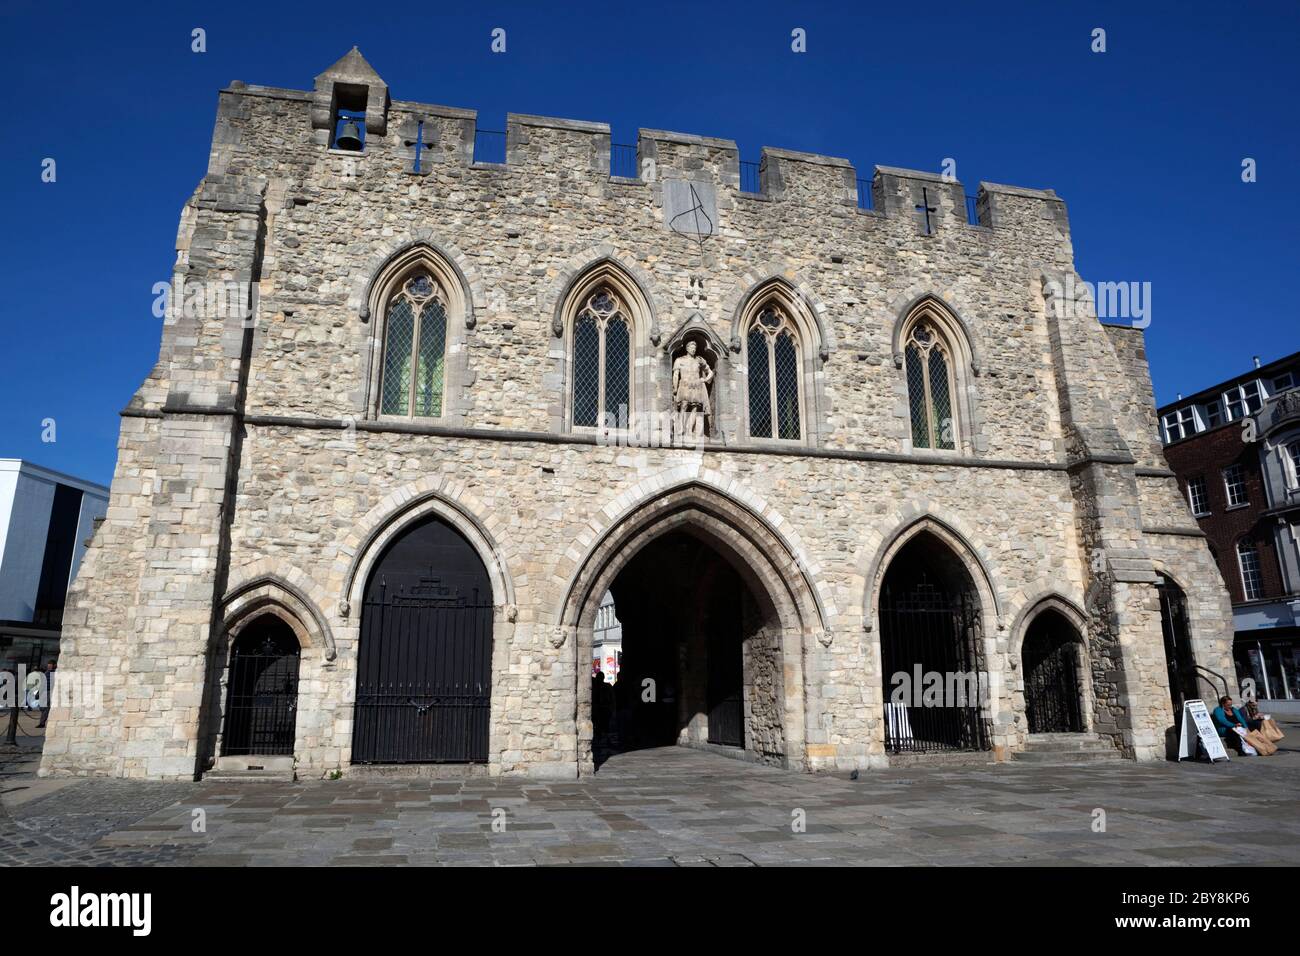 L'entrée médiévale de Bargate, vieille ville de 800 ans, Southampton, Hampshire, Angleterre, Royaume-Uni Banque D'Images